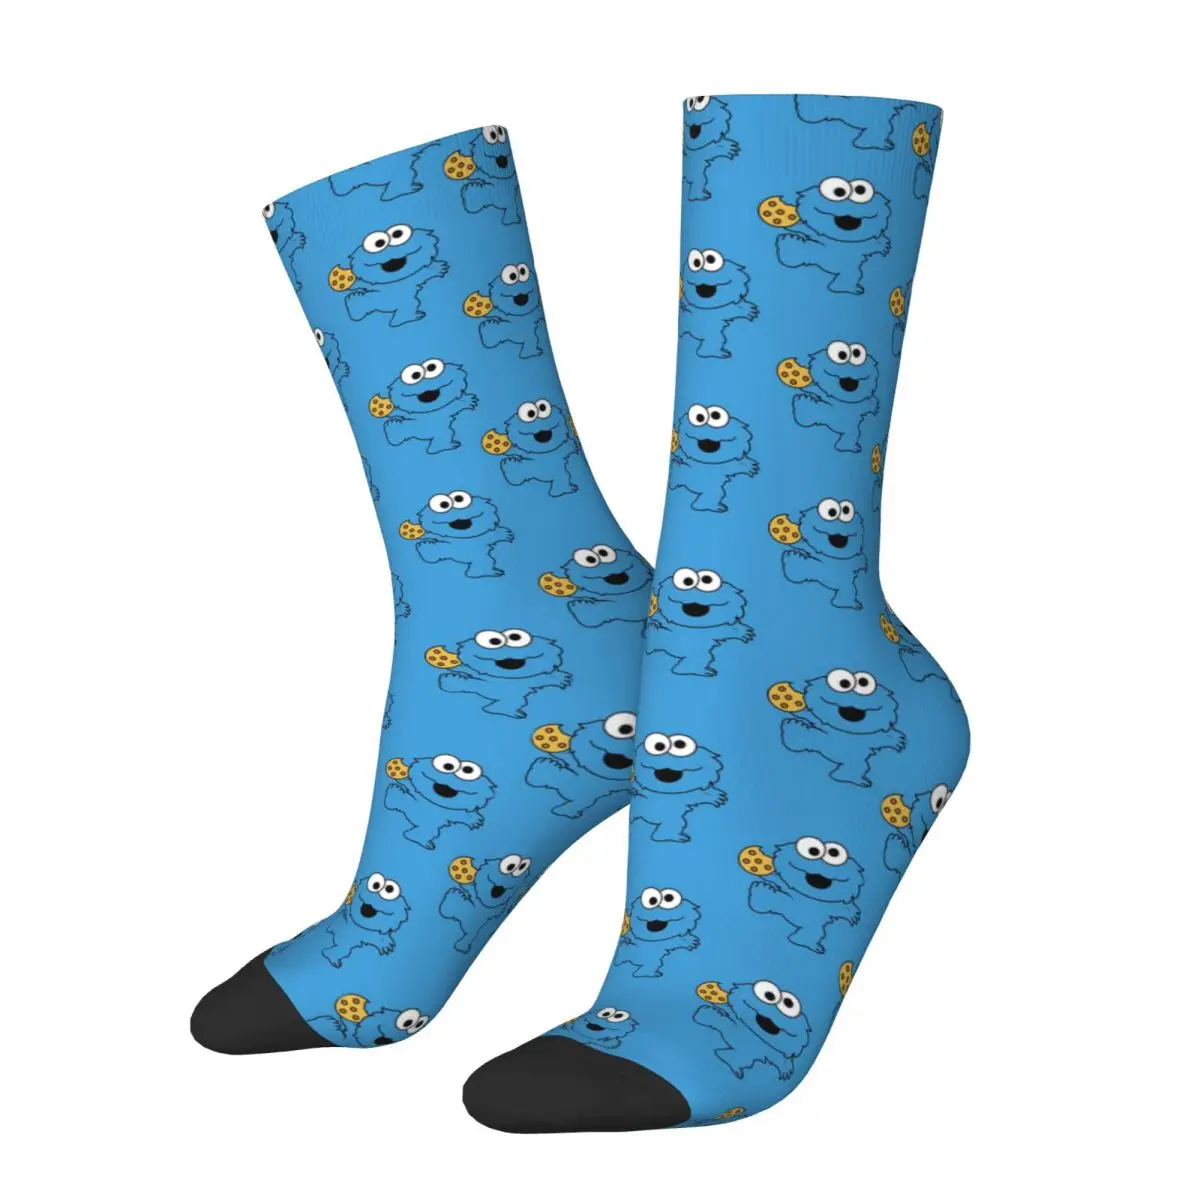 

Sesame Street Elmo Cookie Face Blue Funny Socks for Women Men Novelty Street Style Crazy Spring Summer Socks Gifts